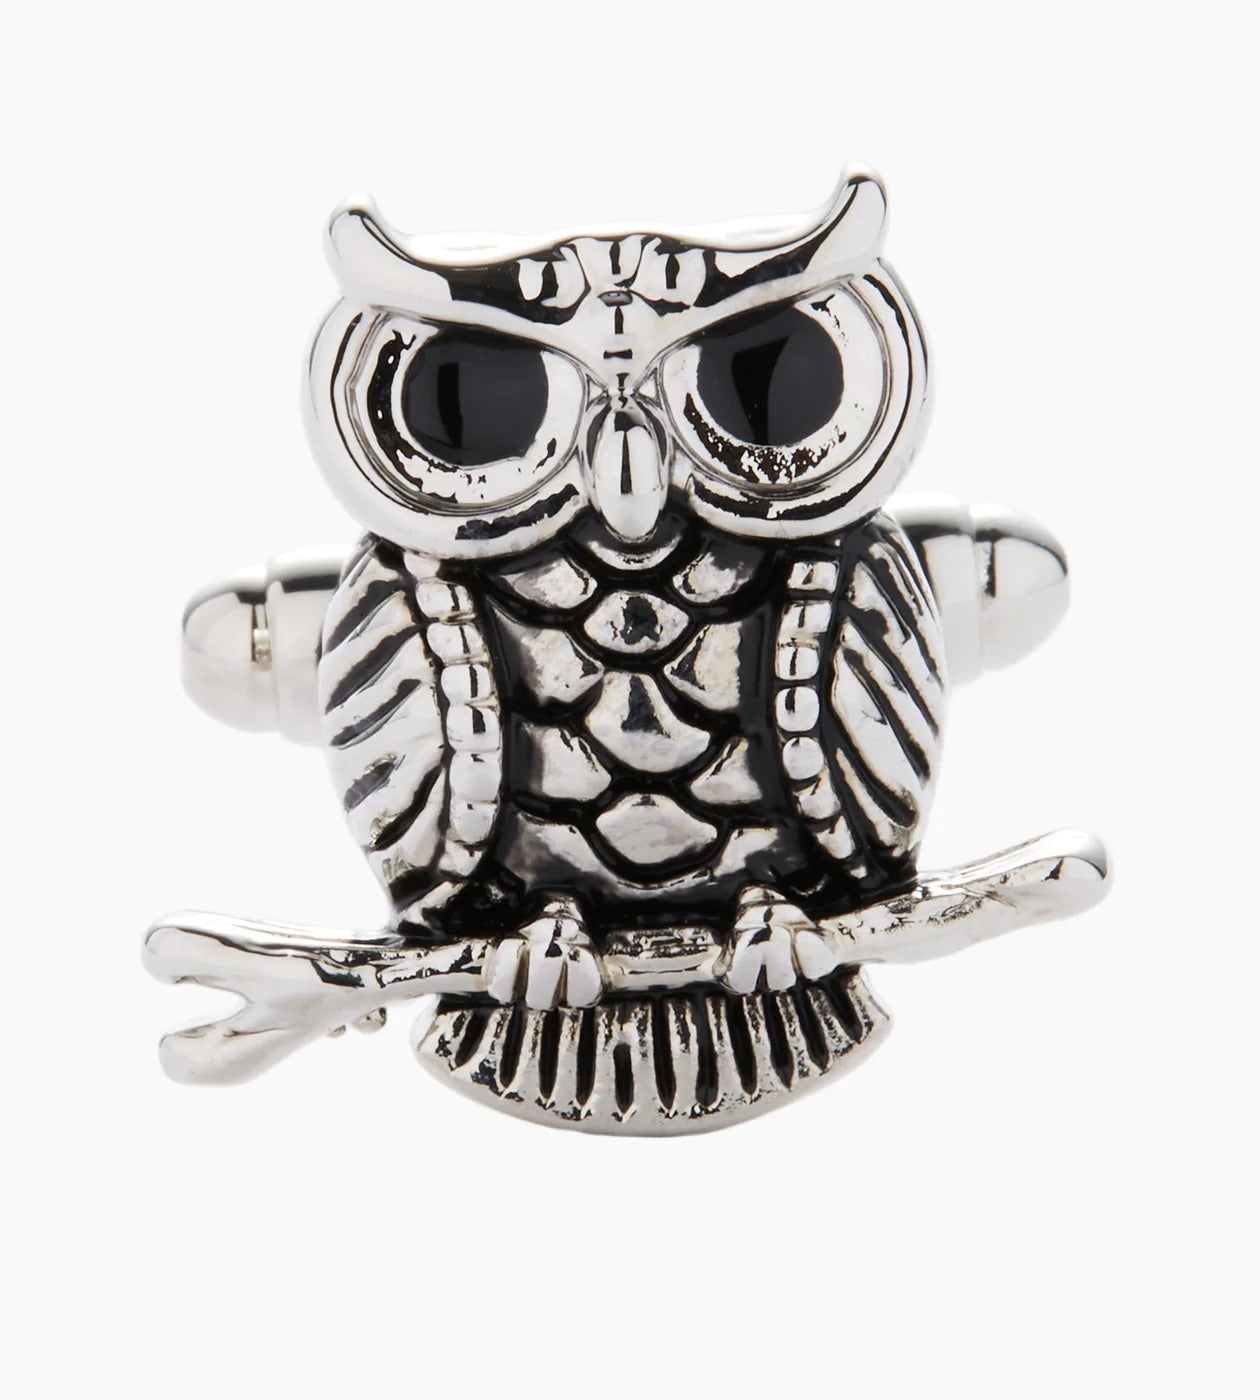 Silver Owl Cufflinks